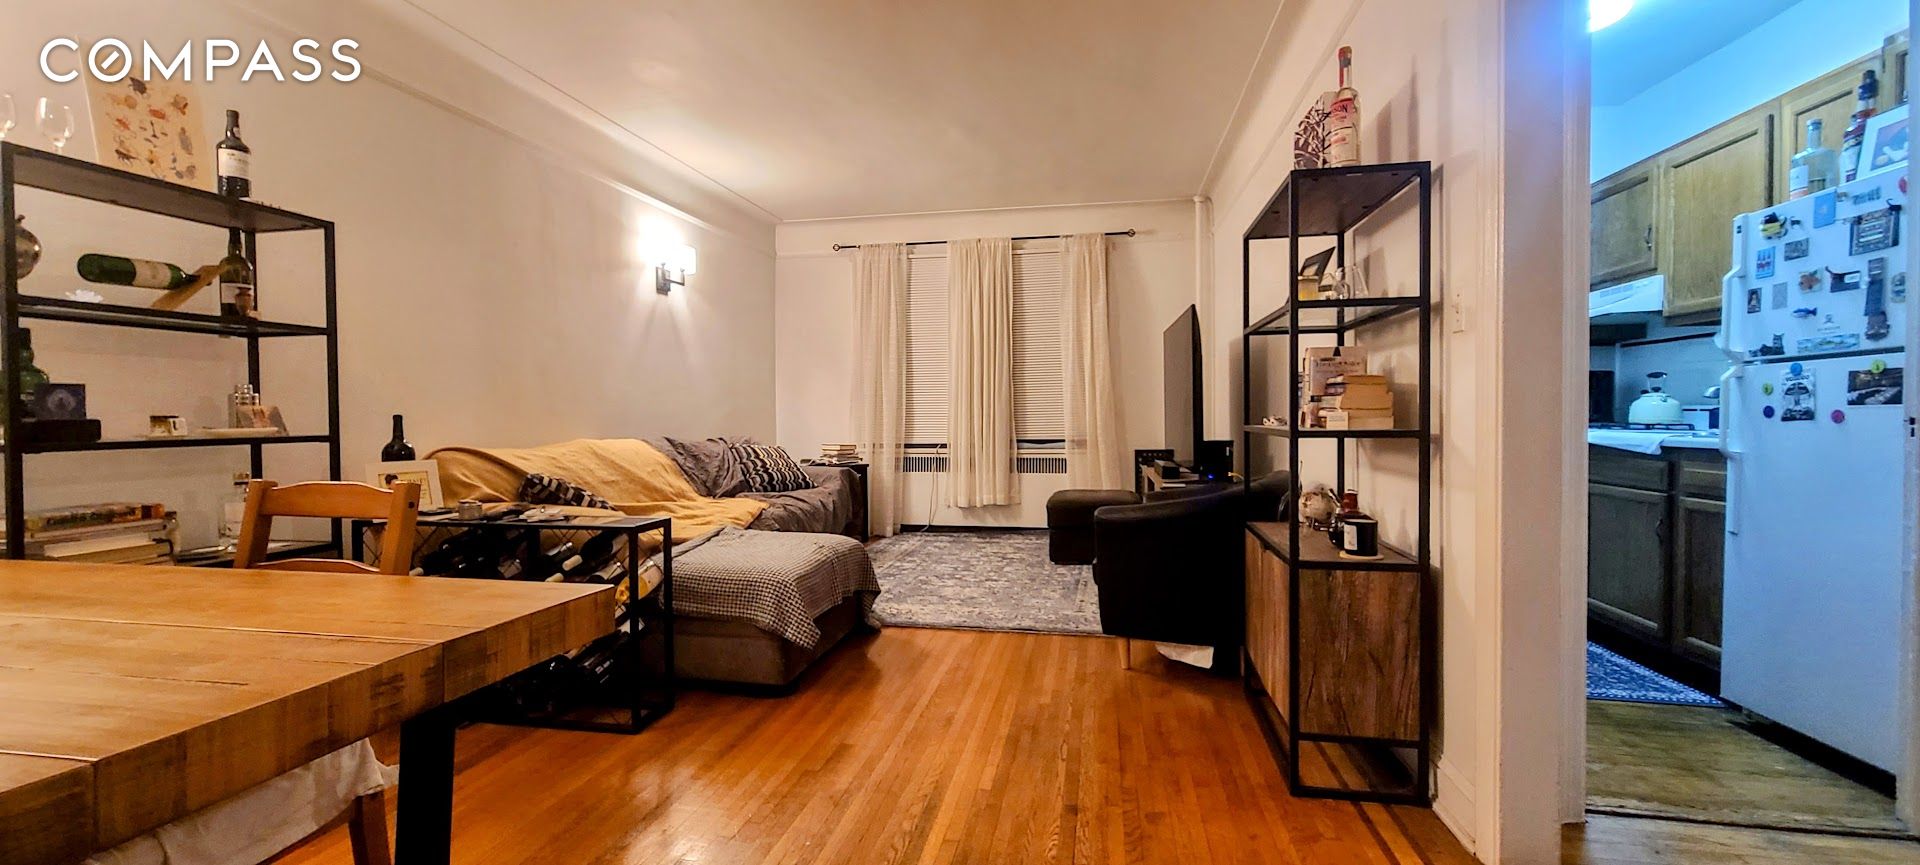 30-83 Crescent Street, Astoria, Queens, New York - 1 Bedrooms  
1 Bathrooms  
3 Rooms - 